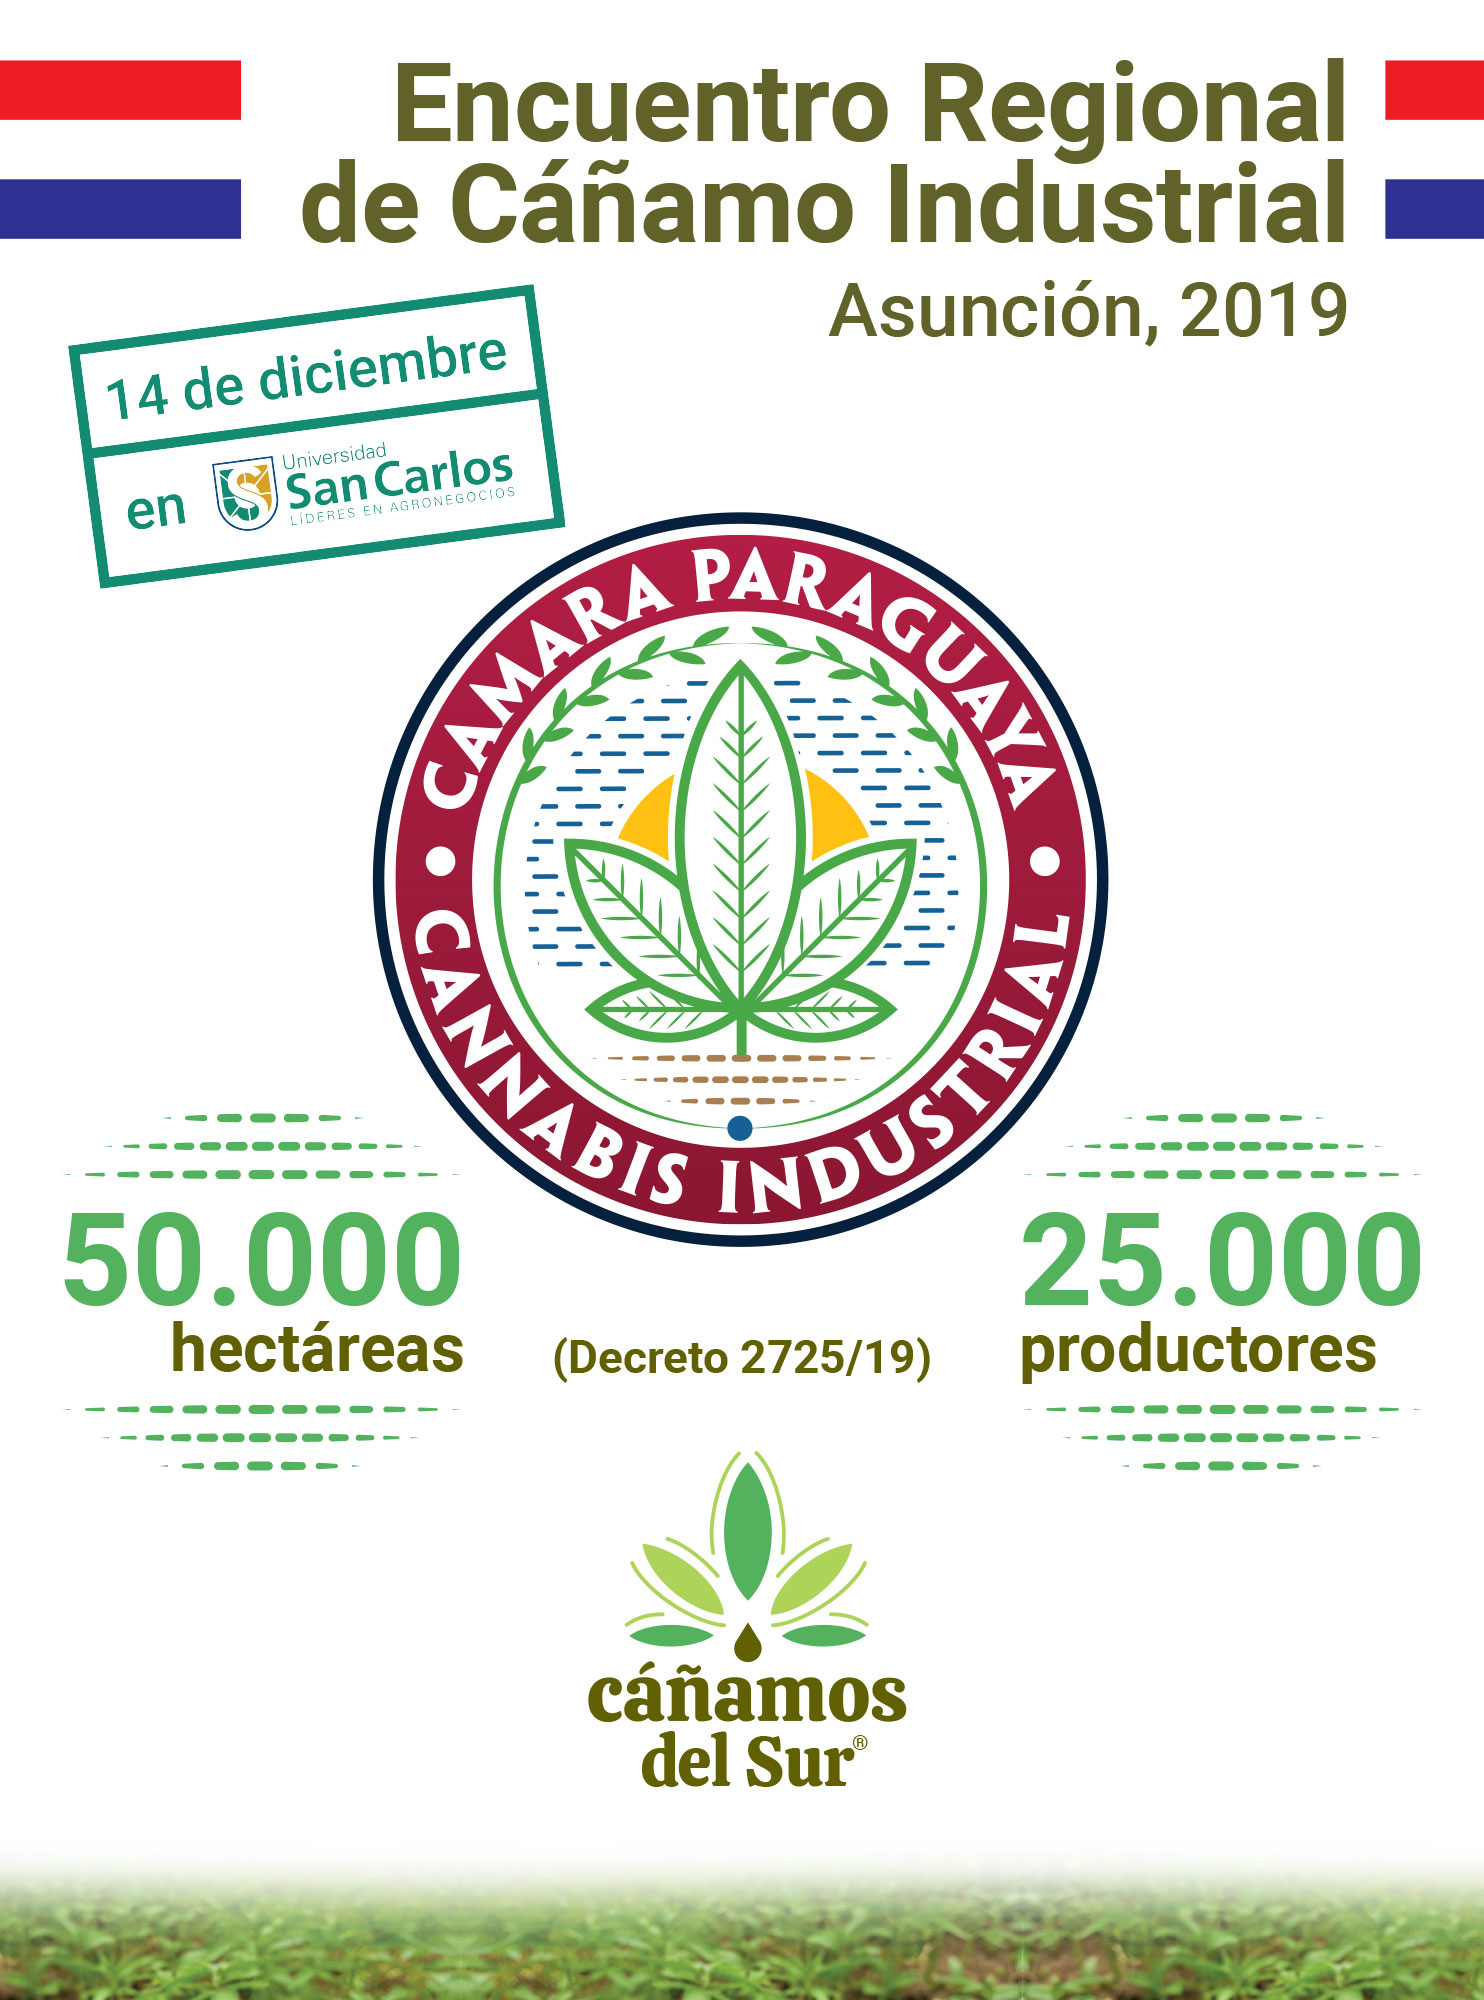 Encuentro Regional de Cáñamo Industrial Asunción Paraguay